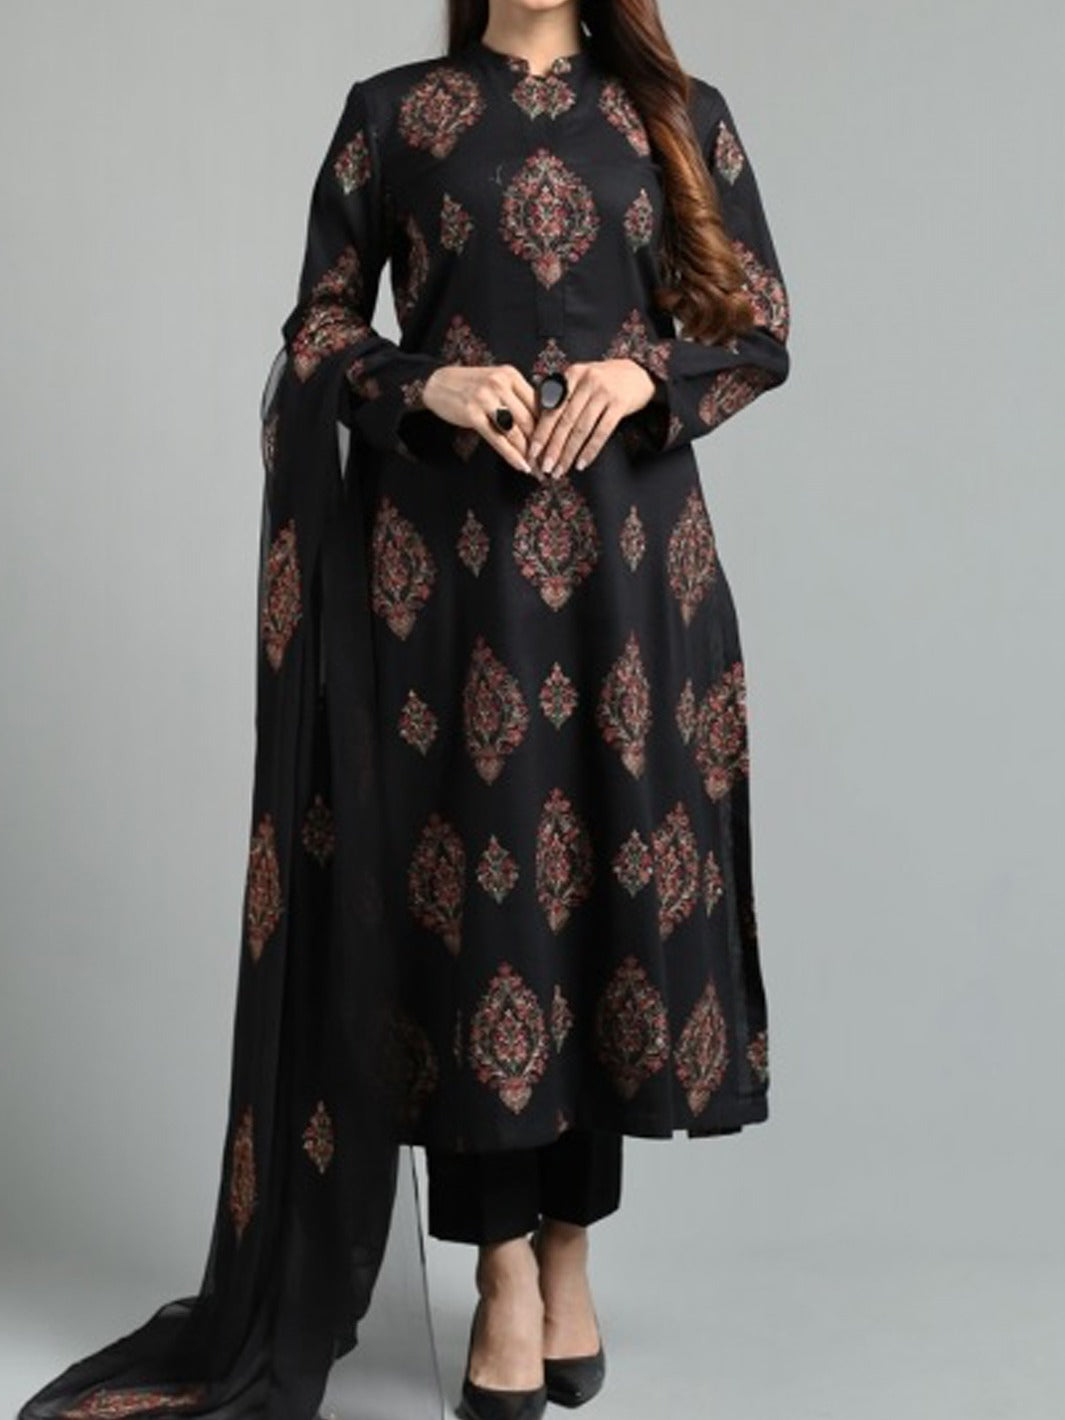 Grace W441-Embroidered 3pc karandi dress with embroidered chiffon dupatta.